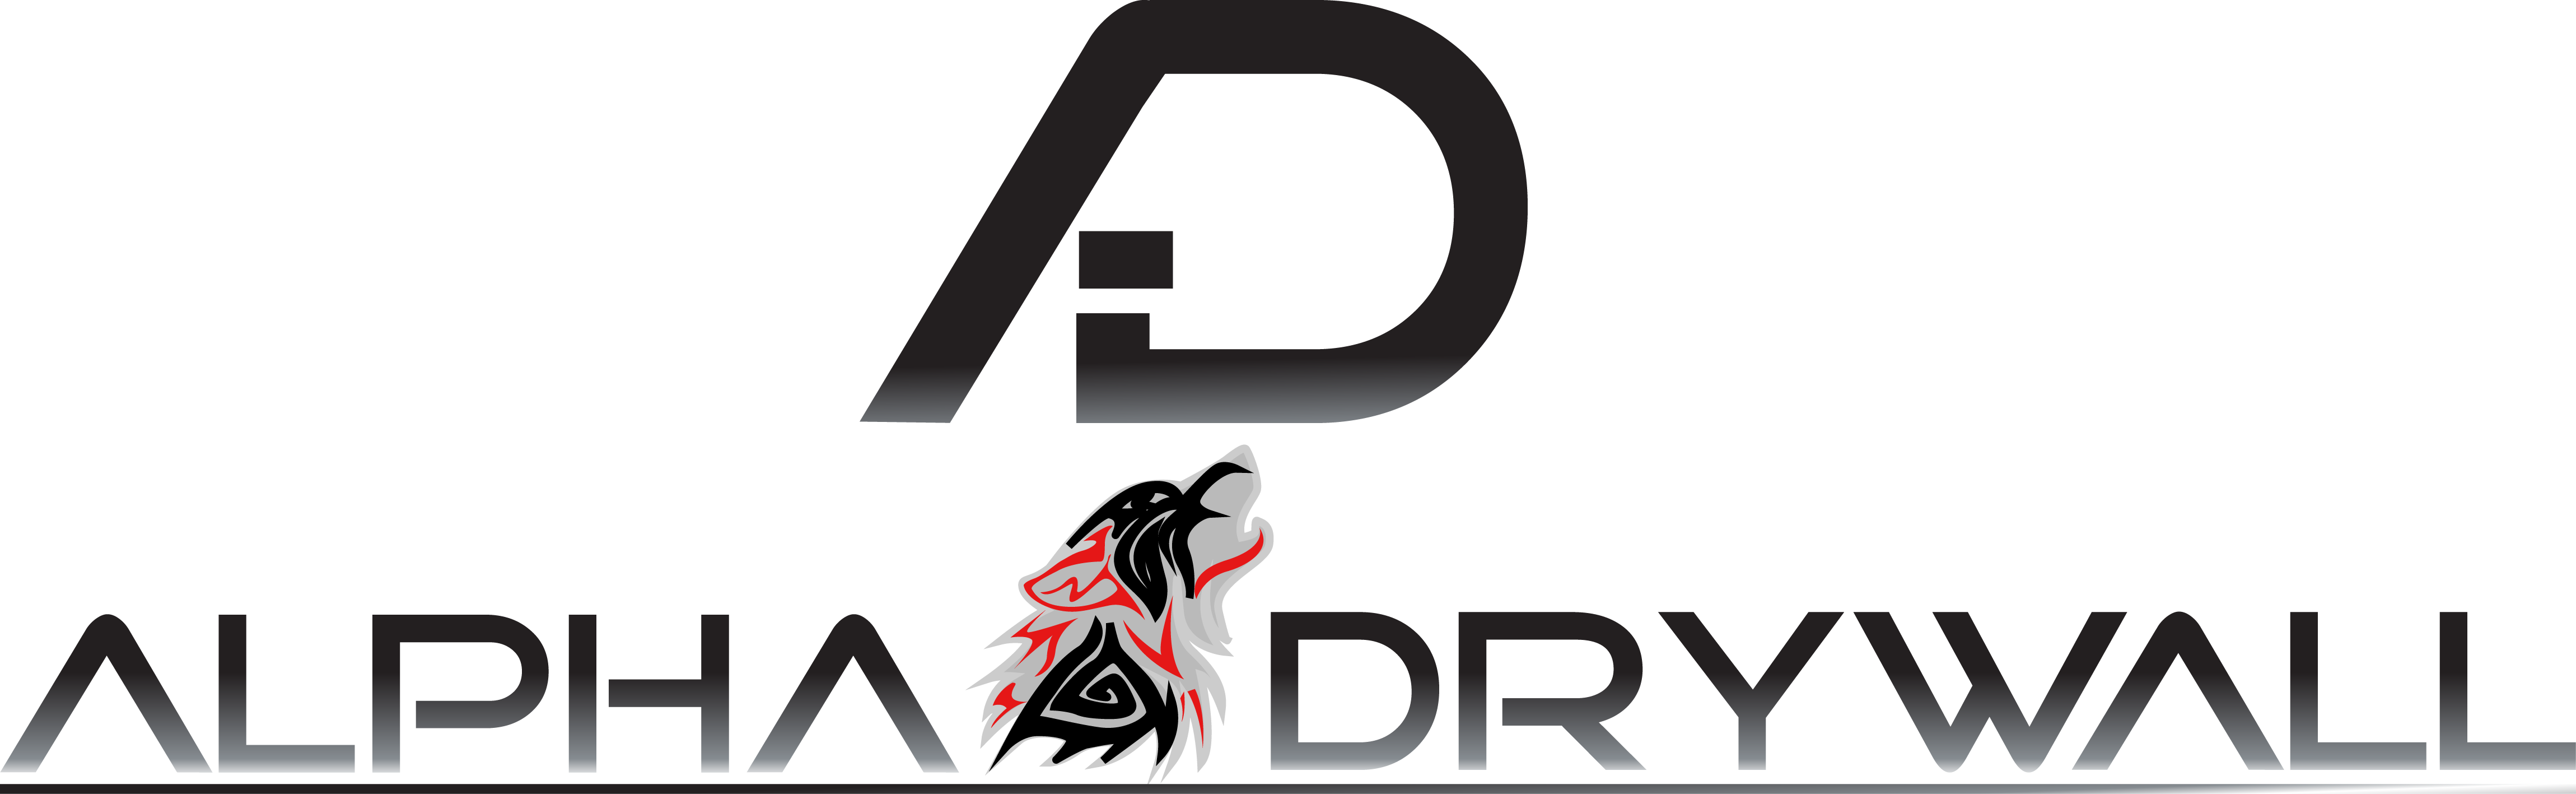 Alpha Drywall logo